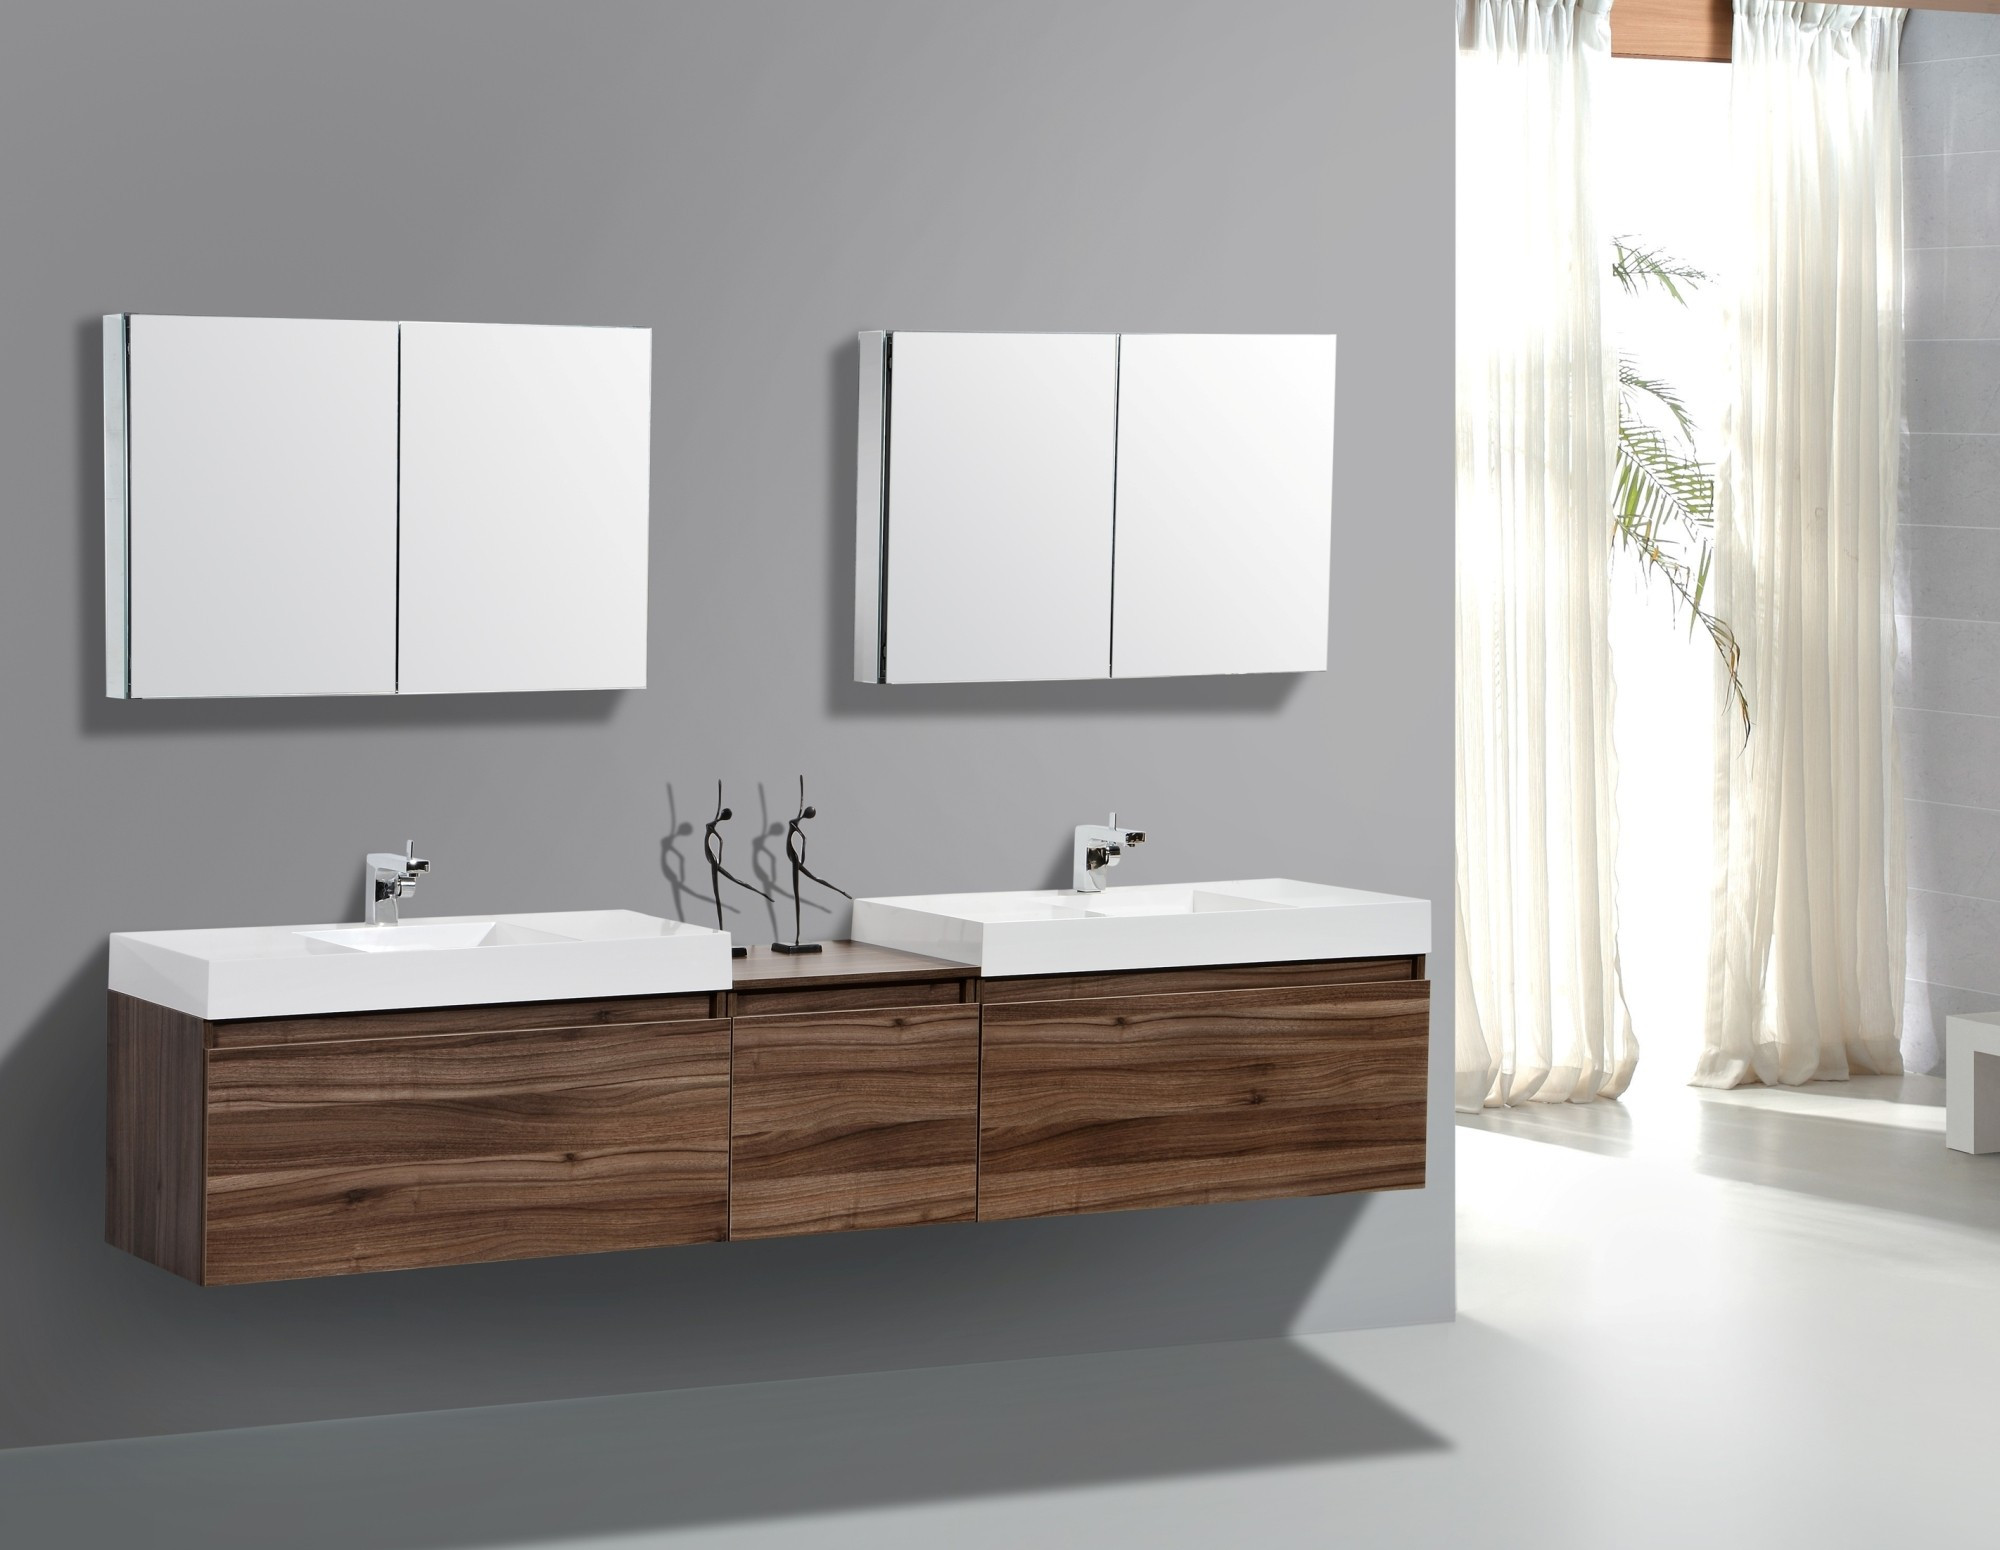 Contemporary Bathroom Cabinets
 Choosing the Best Modern Bathroom Vanities & Vanity Sets